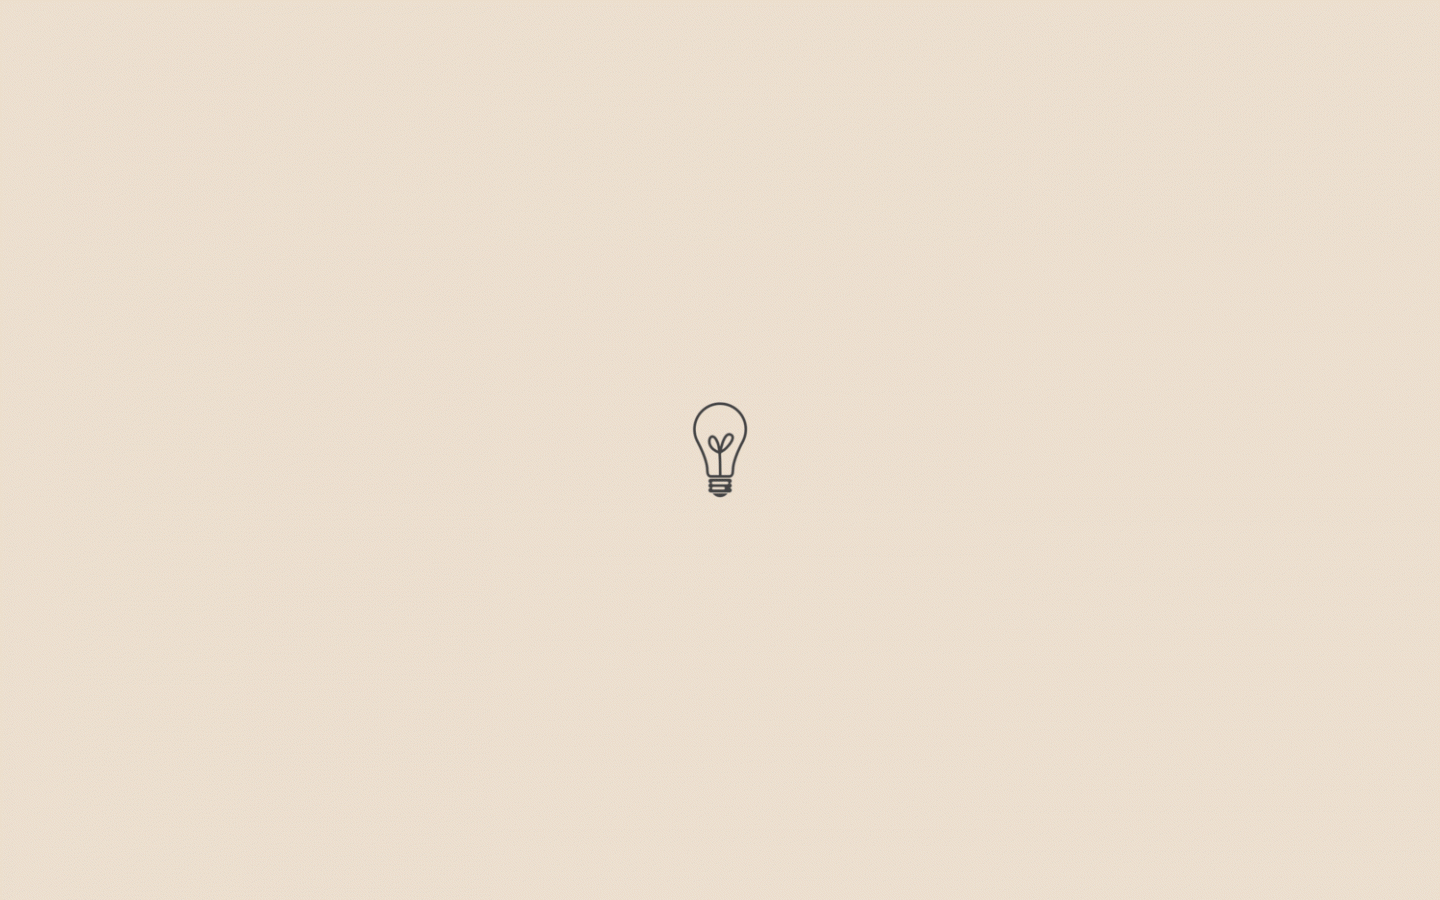 Minimalistic wallpaper with a light bulb - Pastel minimalist, minimalist